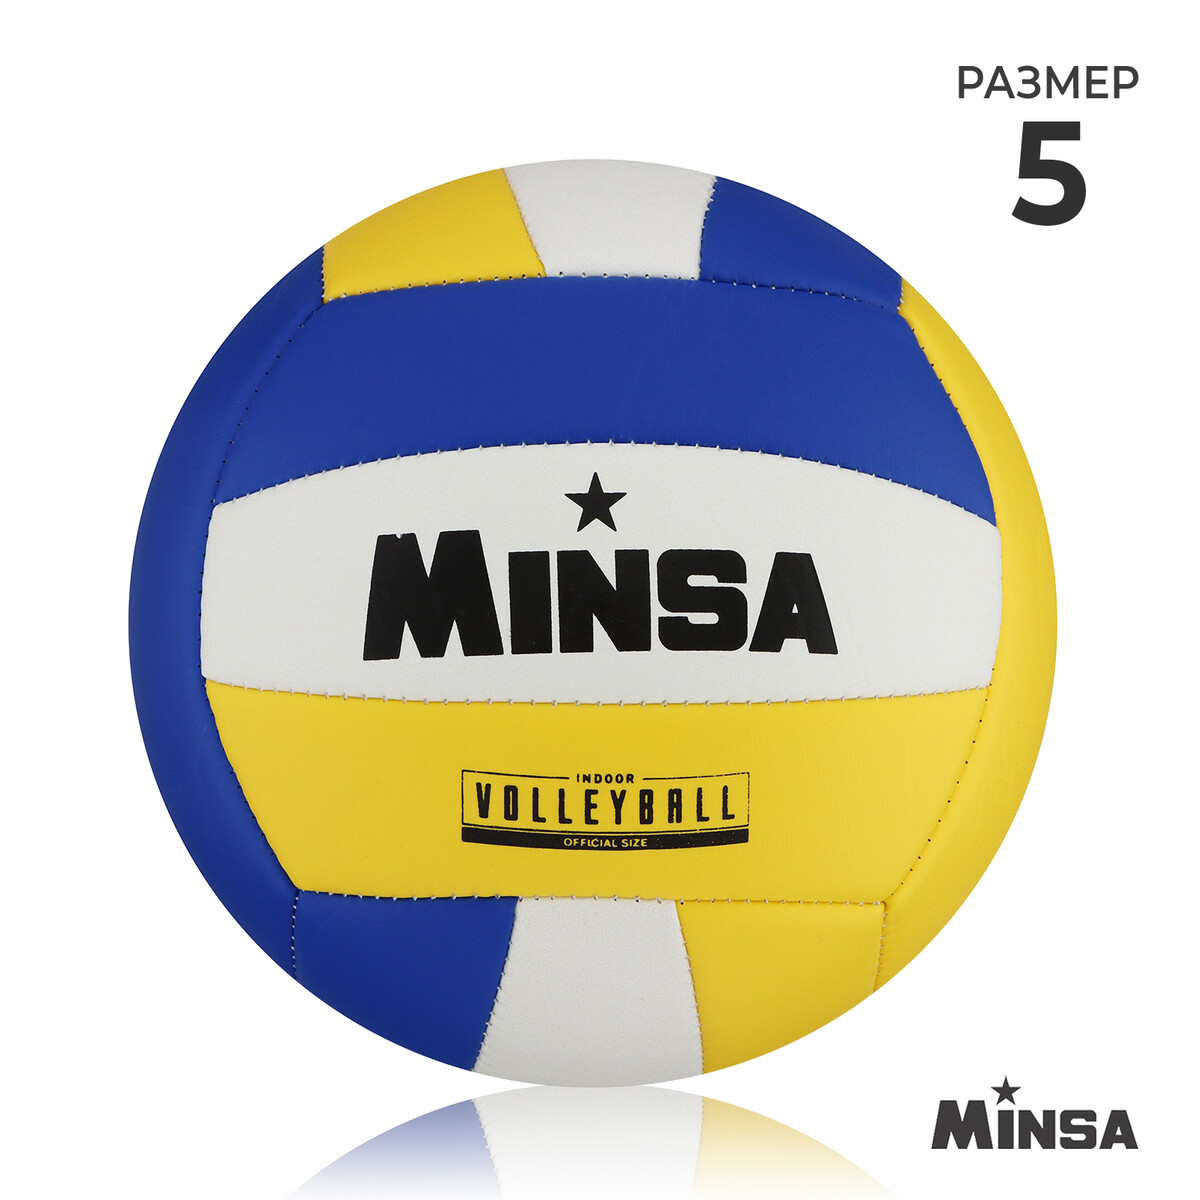 Мяч волейбольный minsa, пвх, машинная сшивка, 18 панелей, р. 5 MINSA